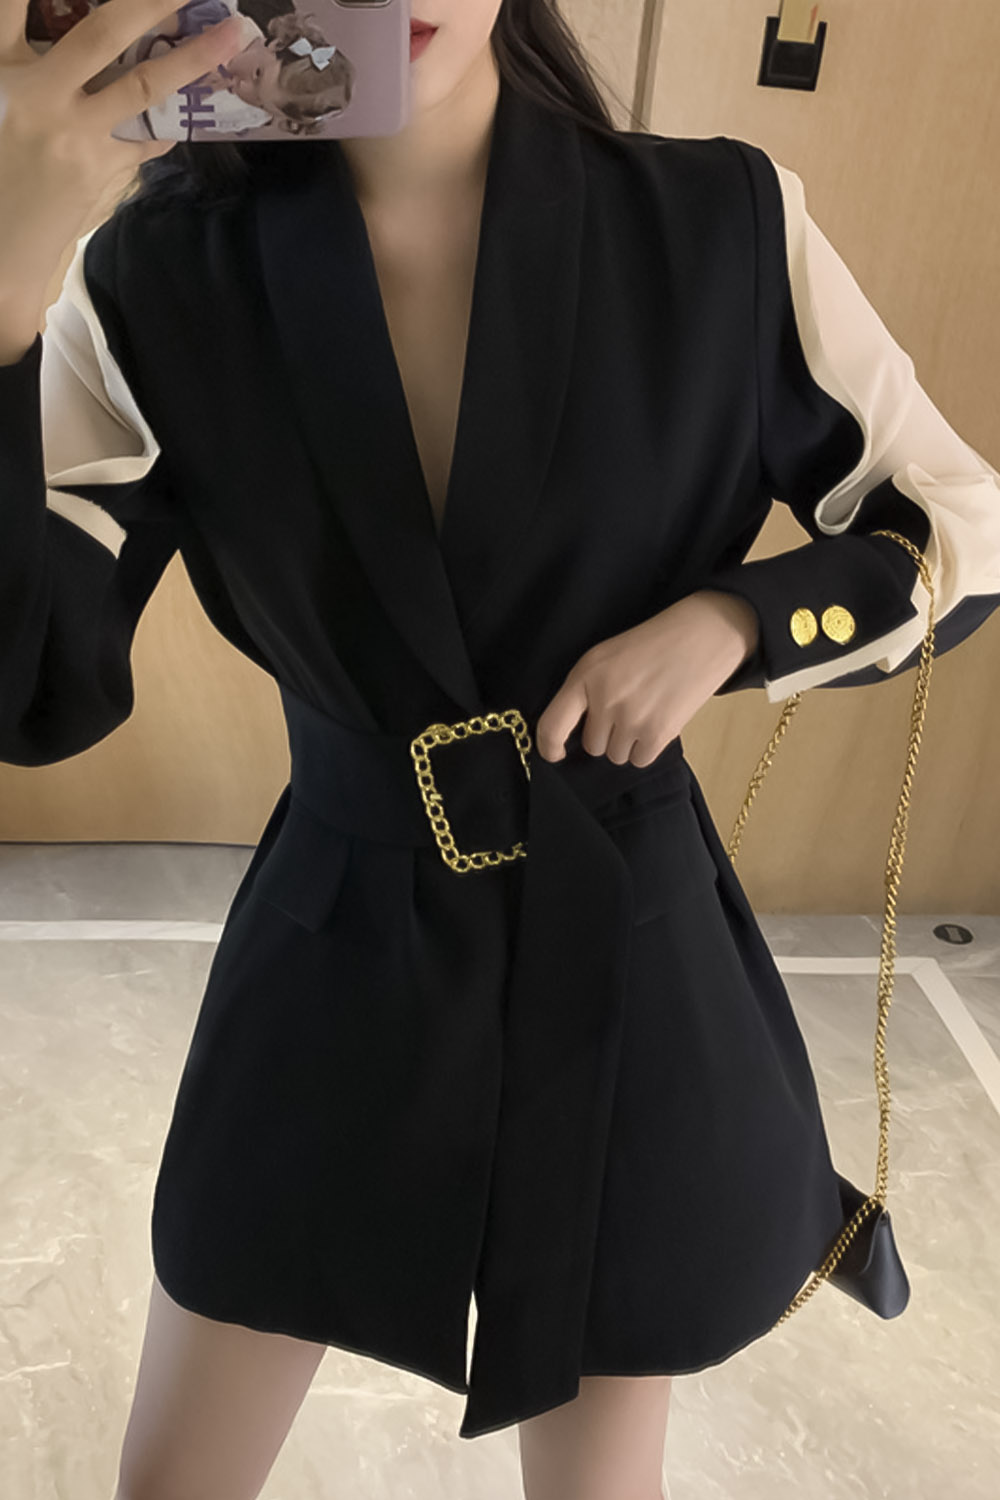 Μαύρο σακάκι με ιδιαίτερο design και ζώνη